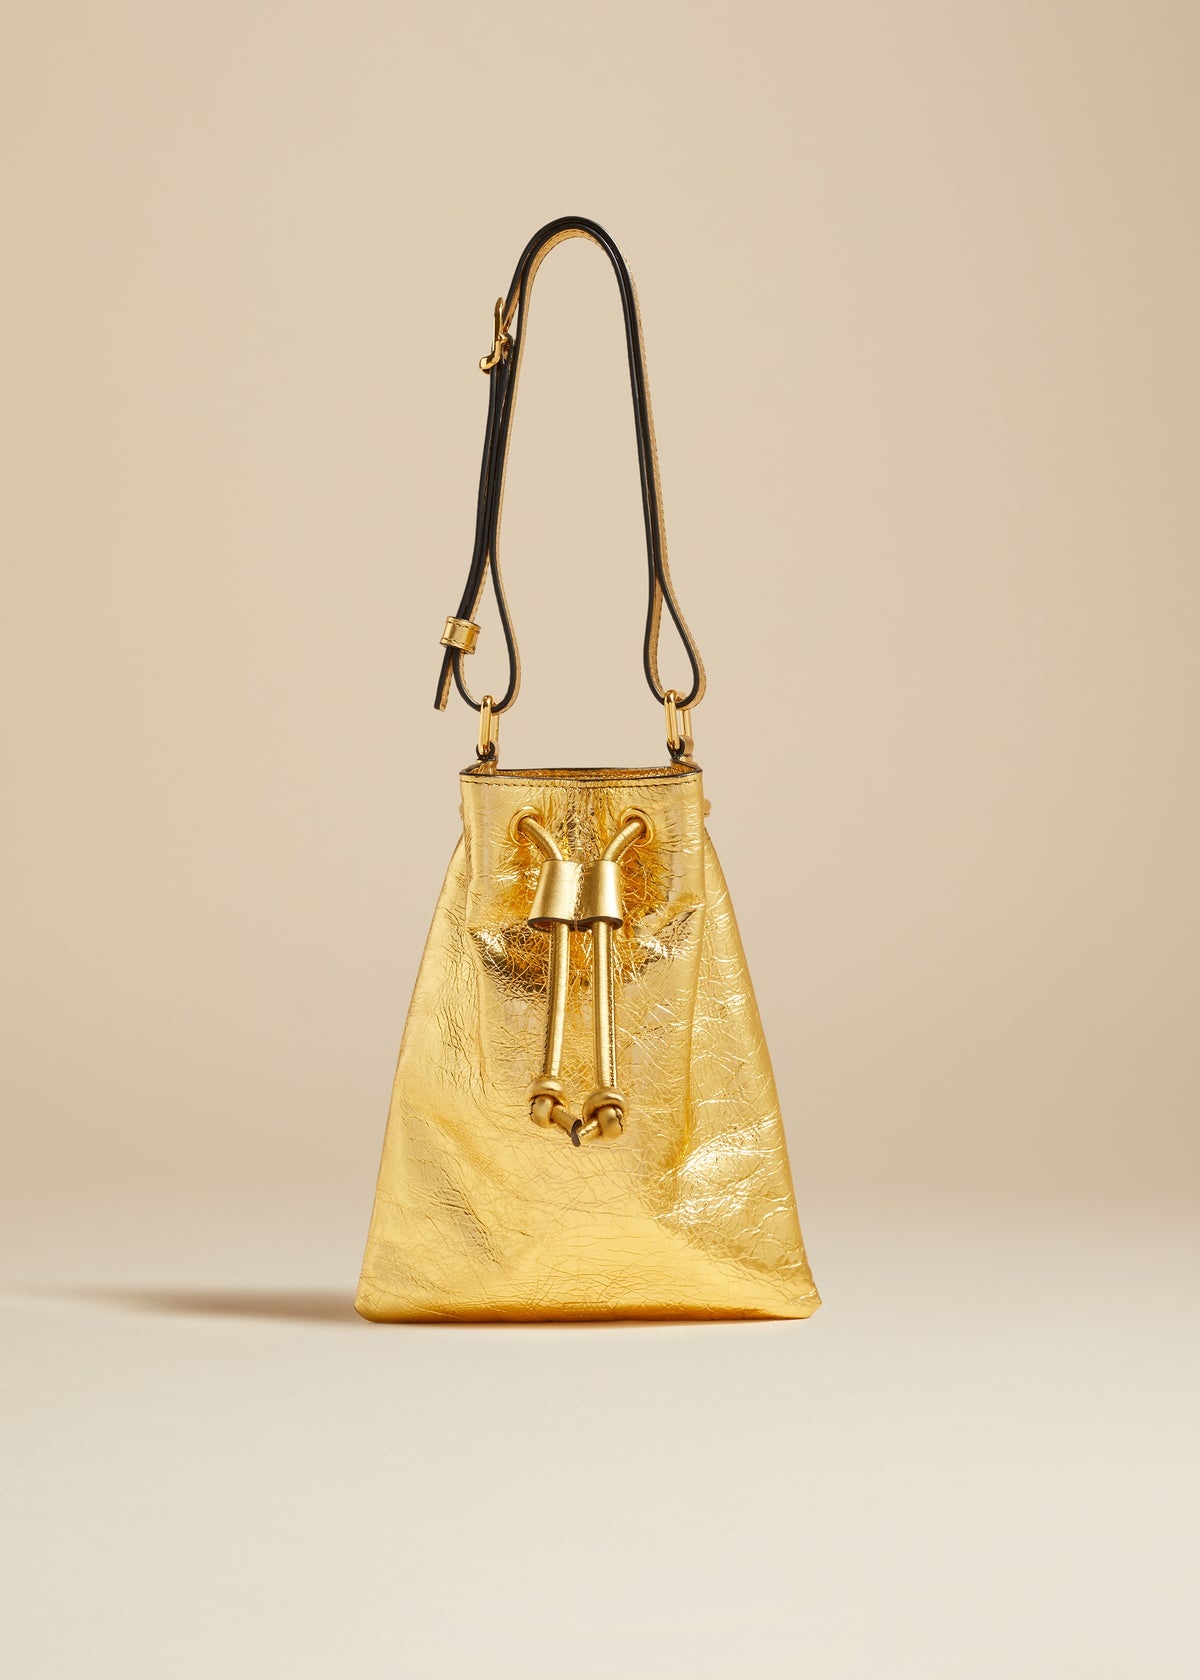 The Small Greta Bag in Gold Metallic Leather - 1